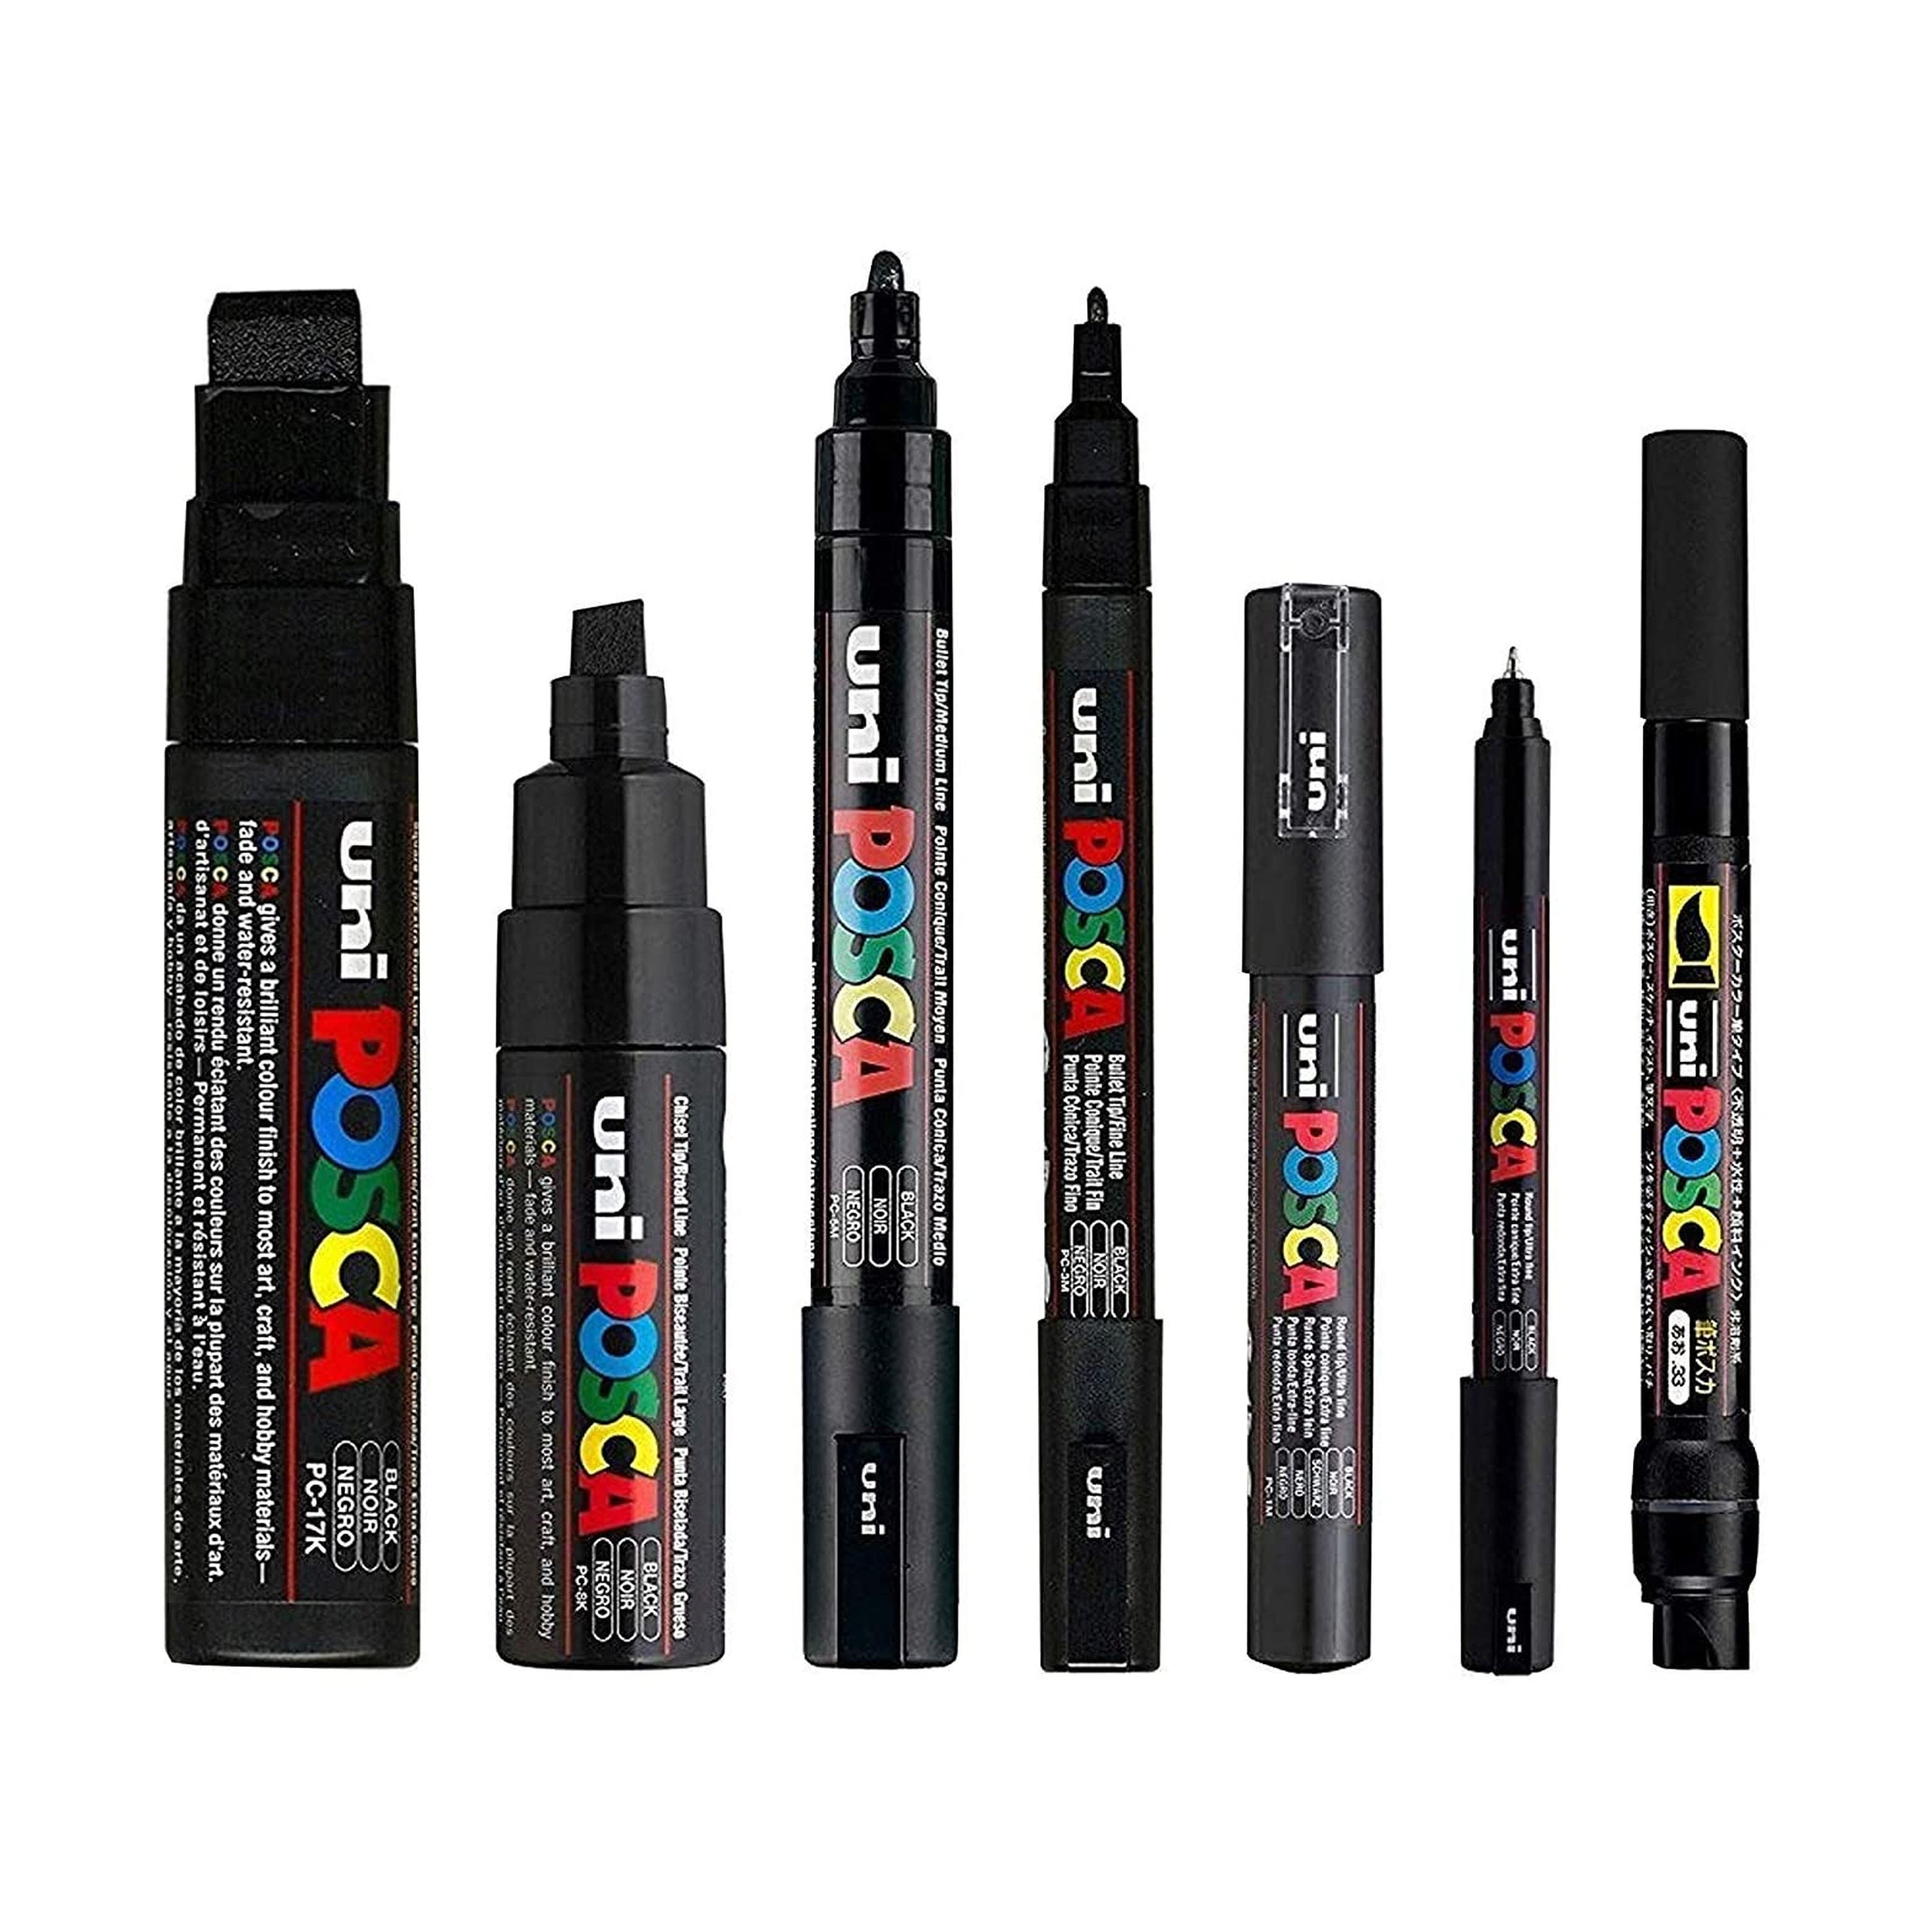 Posca Black Full Set of 7 Pens pc-17k, Pc-8k, Pc-5m, Pc-3m, Pc-1m